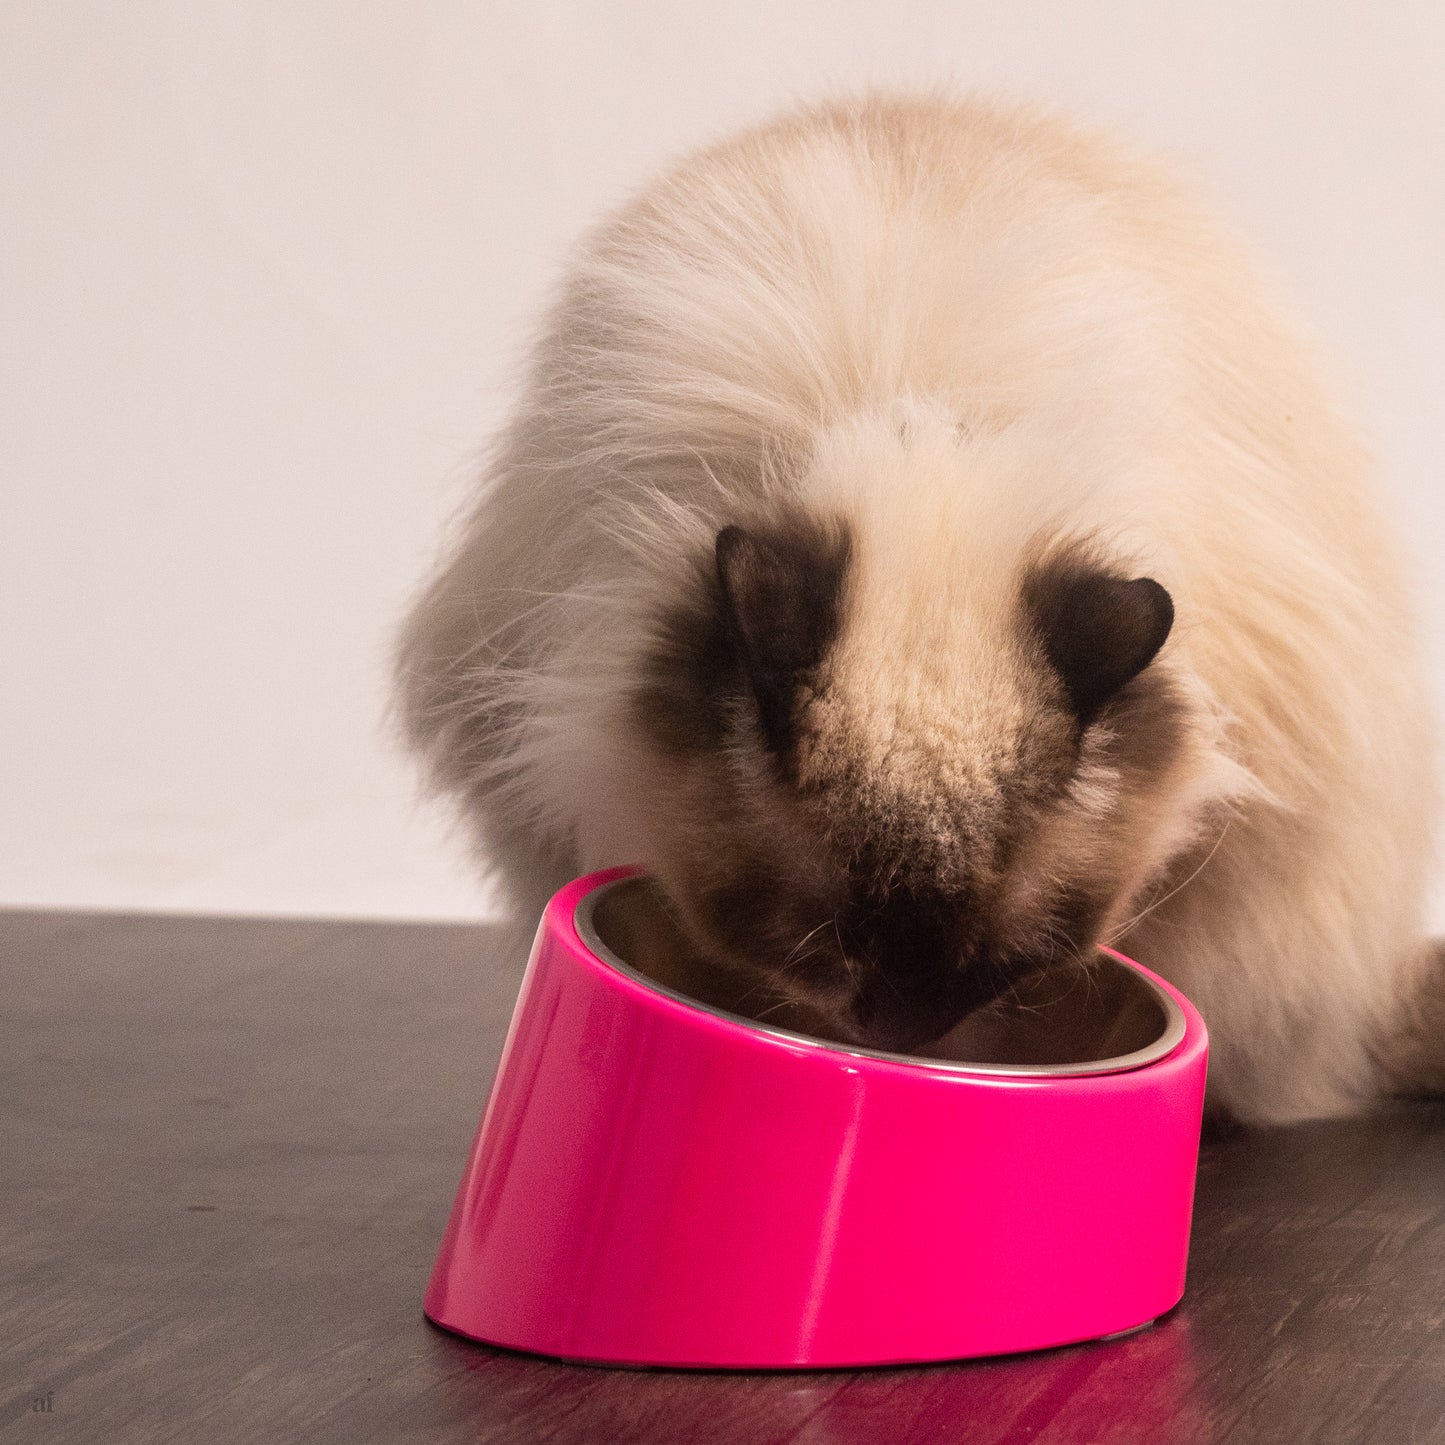 Slant bowls for dogs & cats online Dubai | Cat bowls UAE